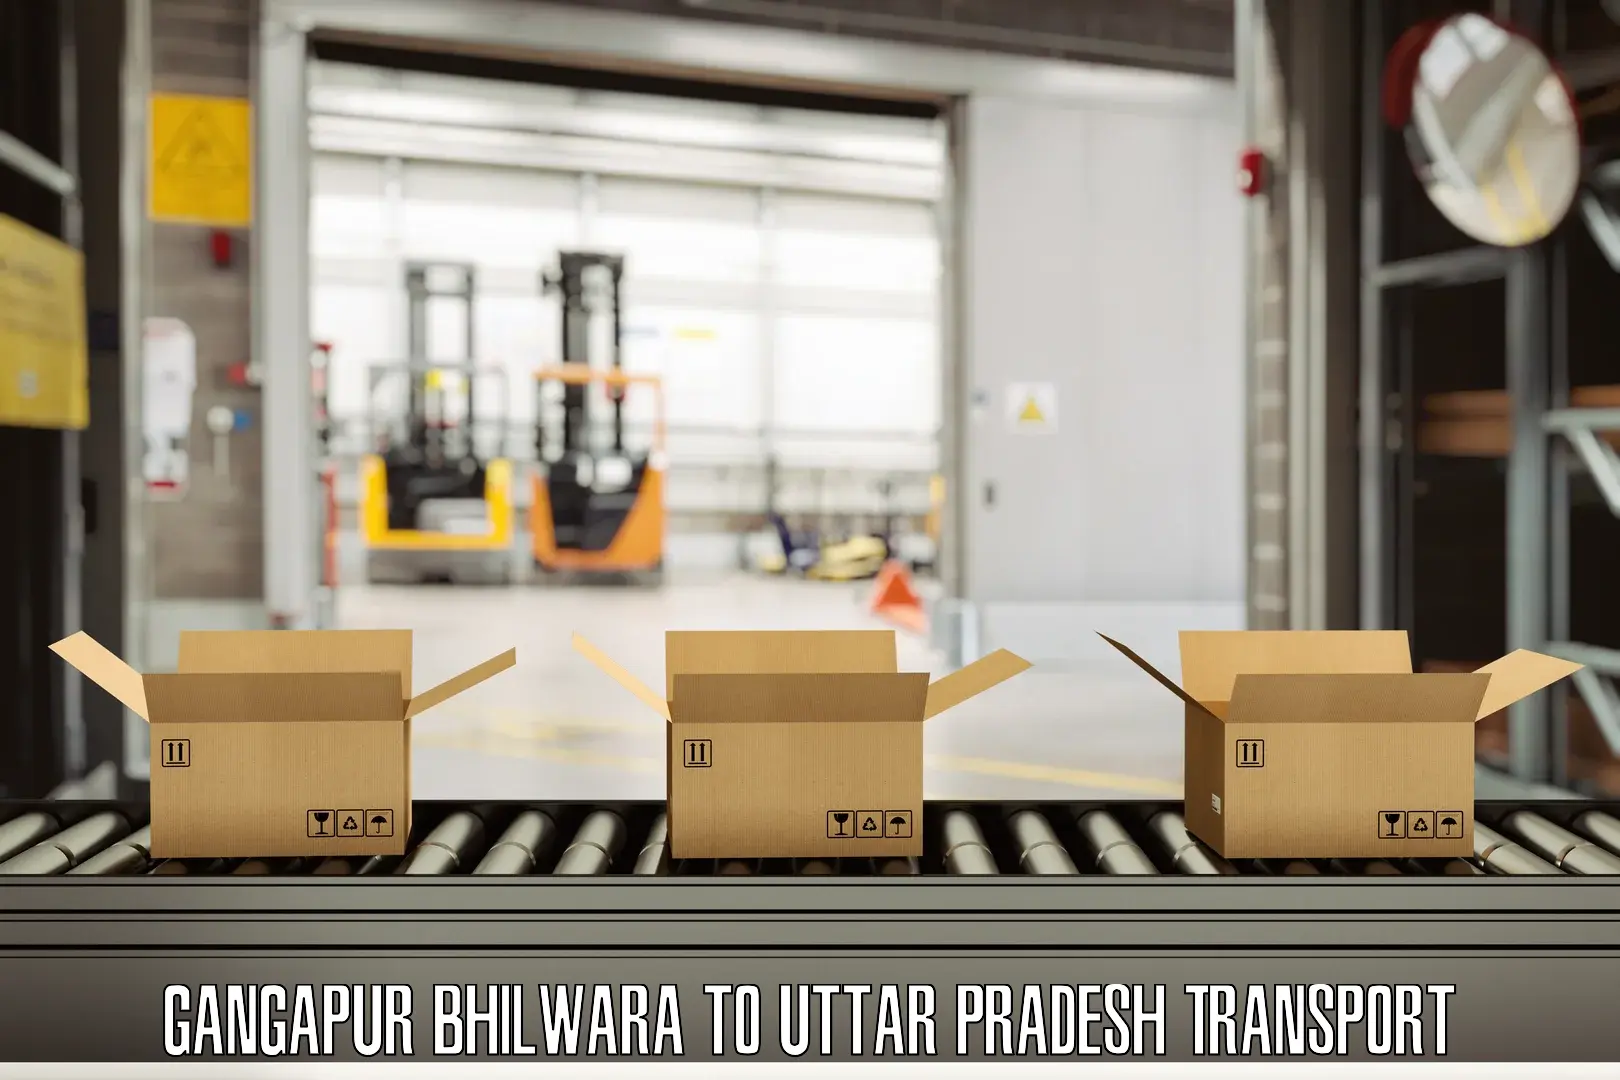 Cargo transportation services Gangapur Bhilwara to Rampur Maniharan